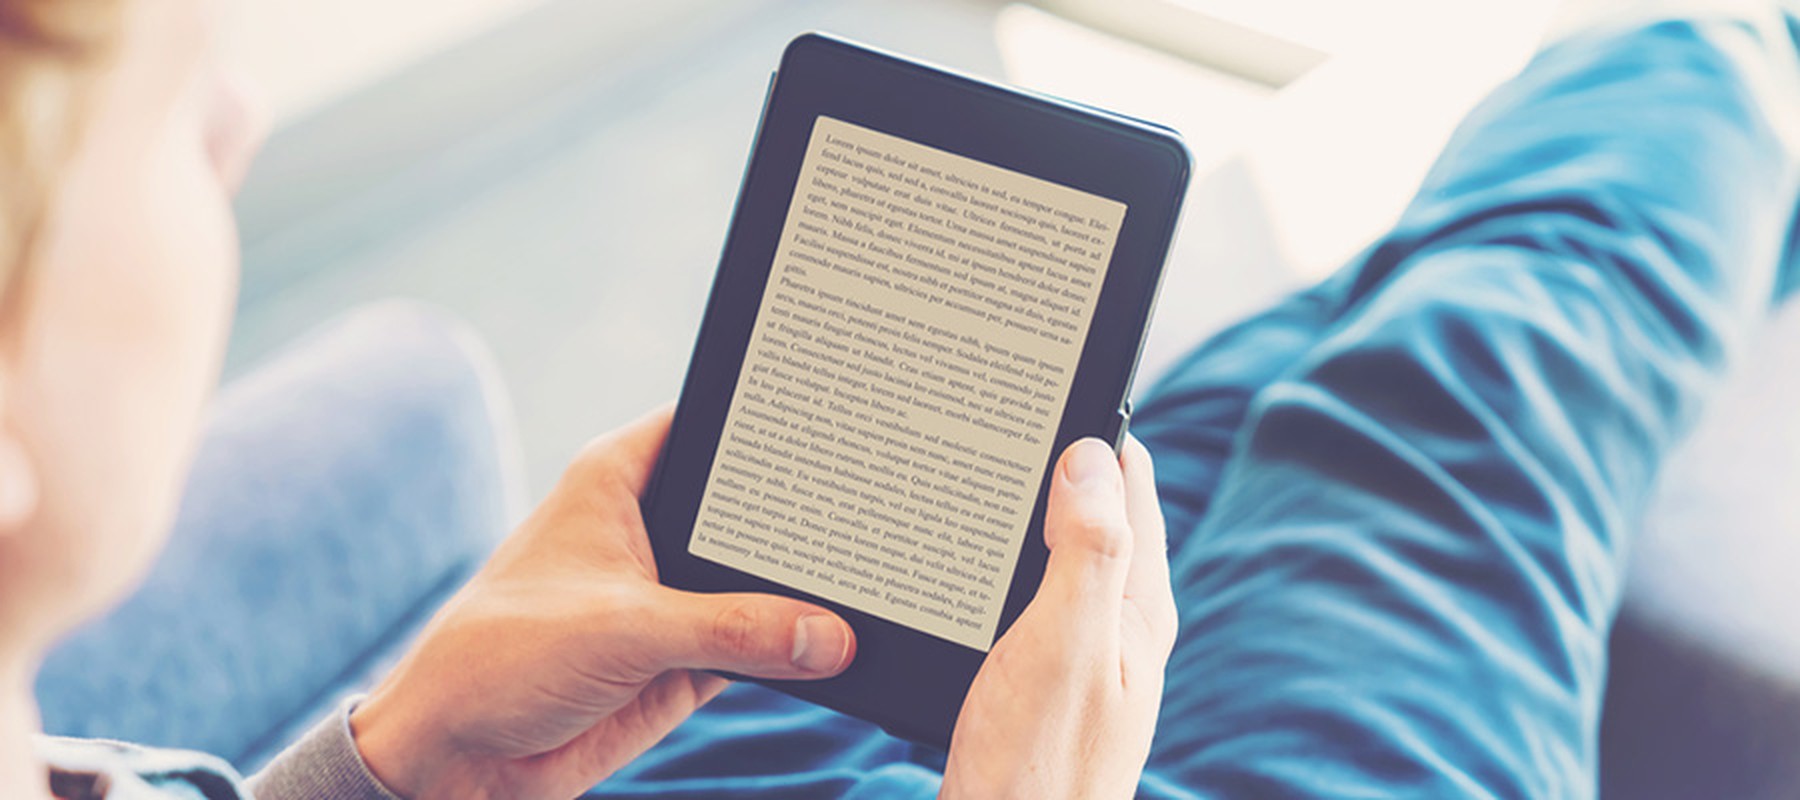 Jóven leyendo en un dispositivo e-reader